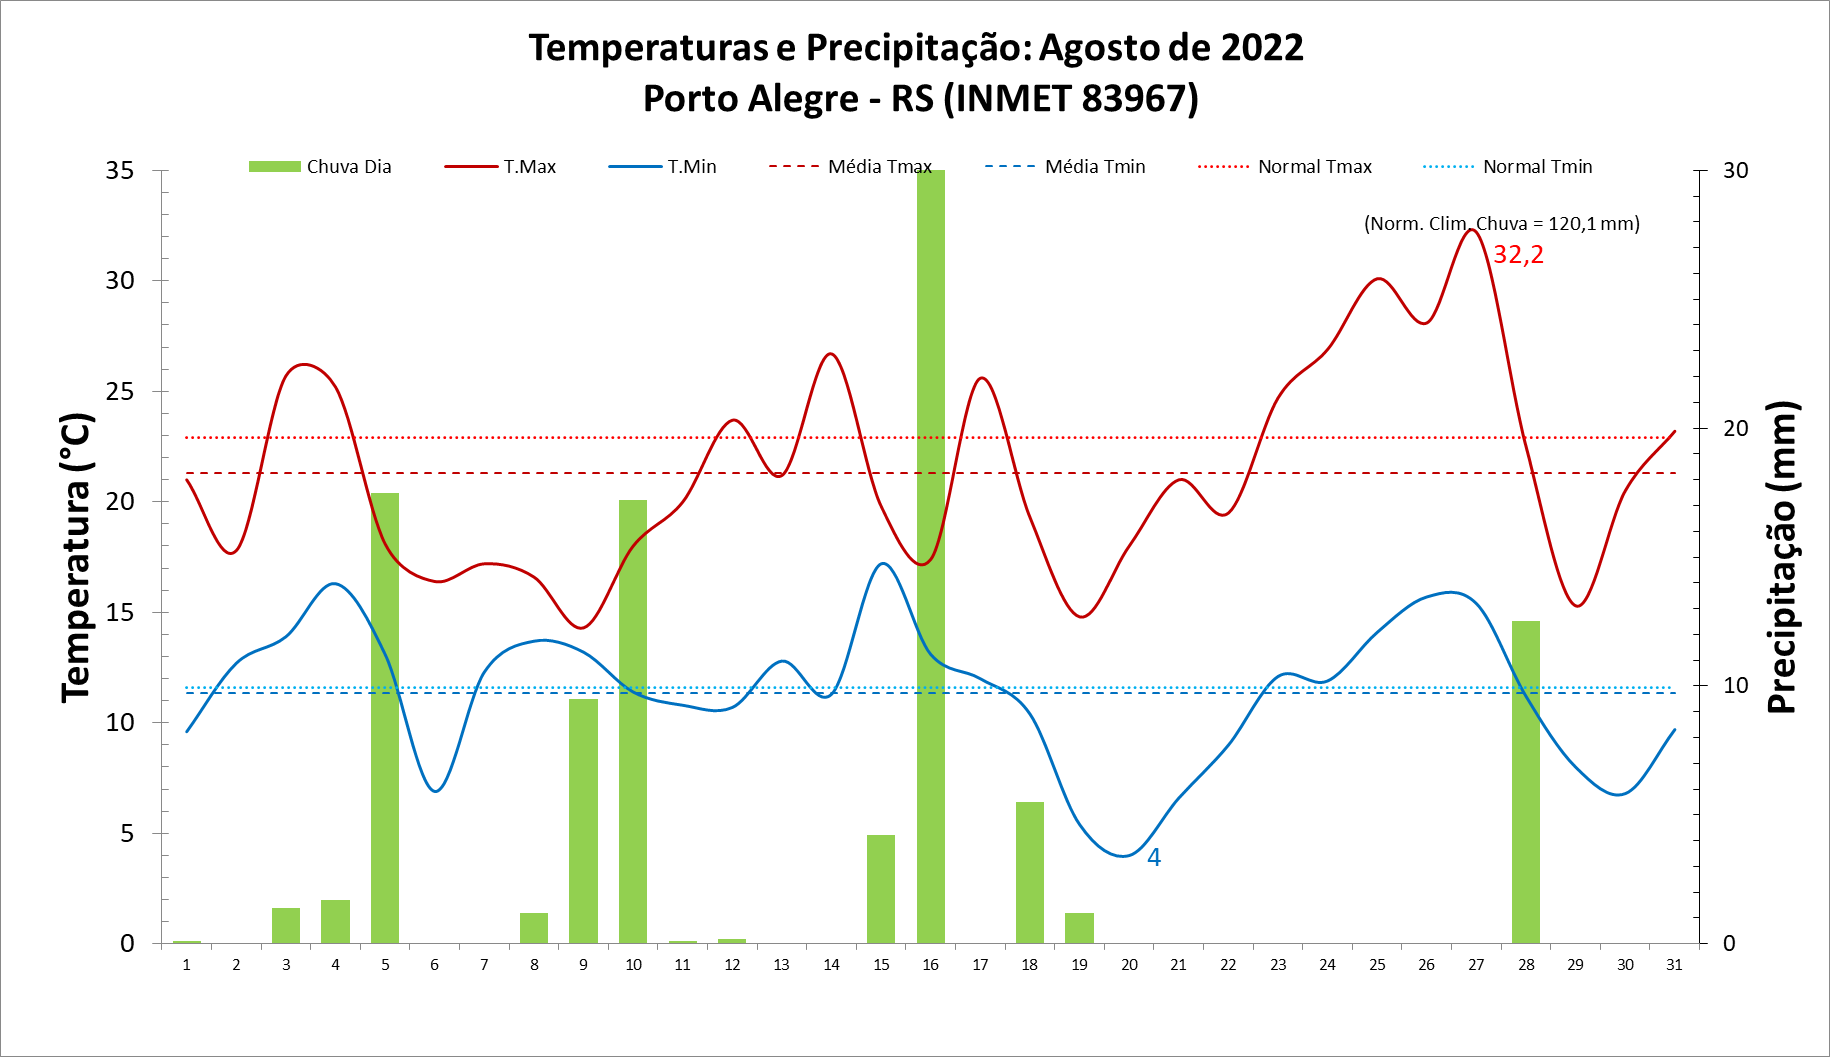 Porto Alegre (RS) registra temperaturas máximas abaixo da média em agosto de 2022